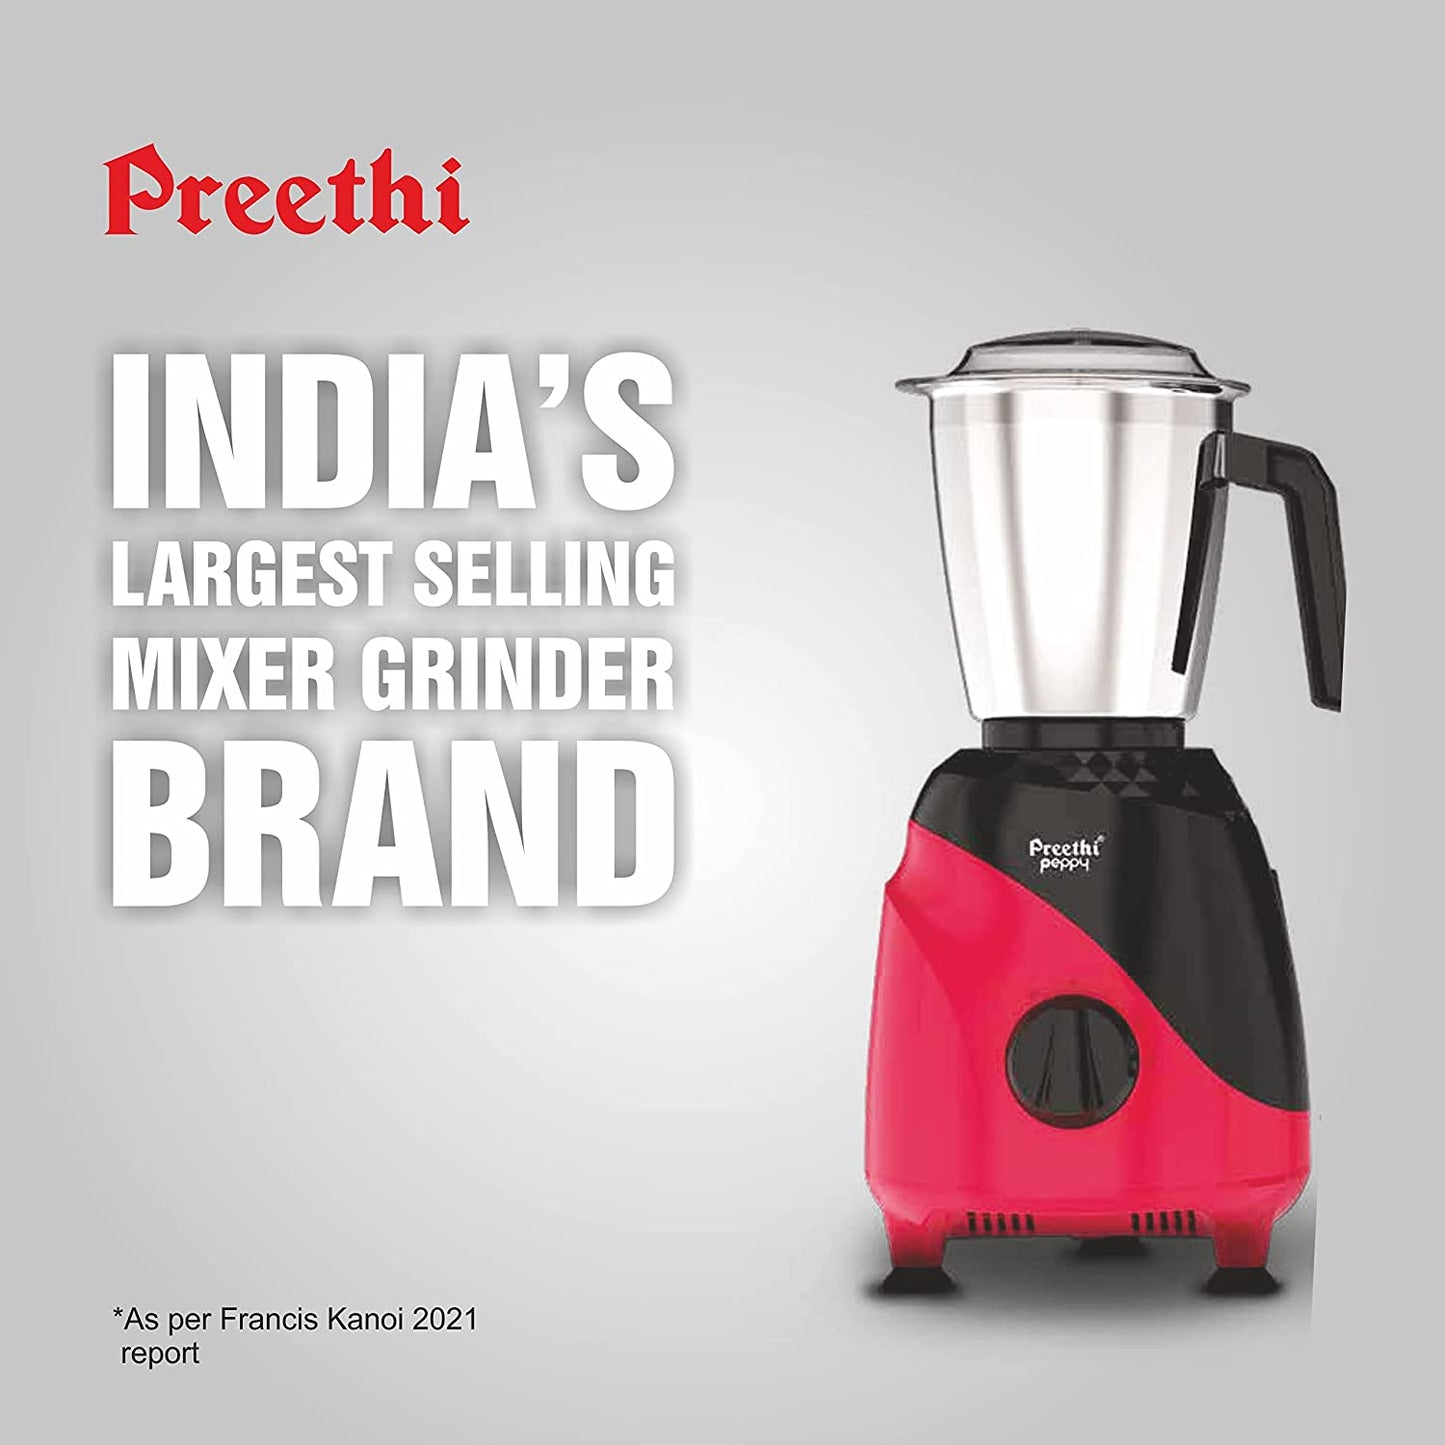 Preethi Peppy MG-245 Mixer Grinder, 750W, 3 Jar